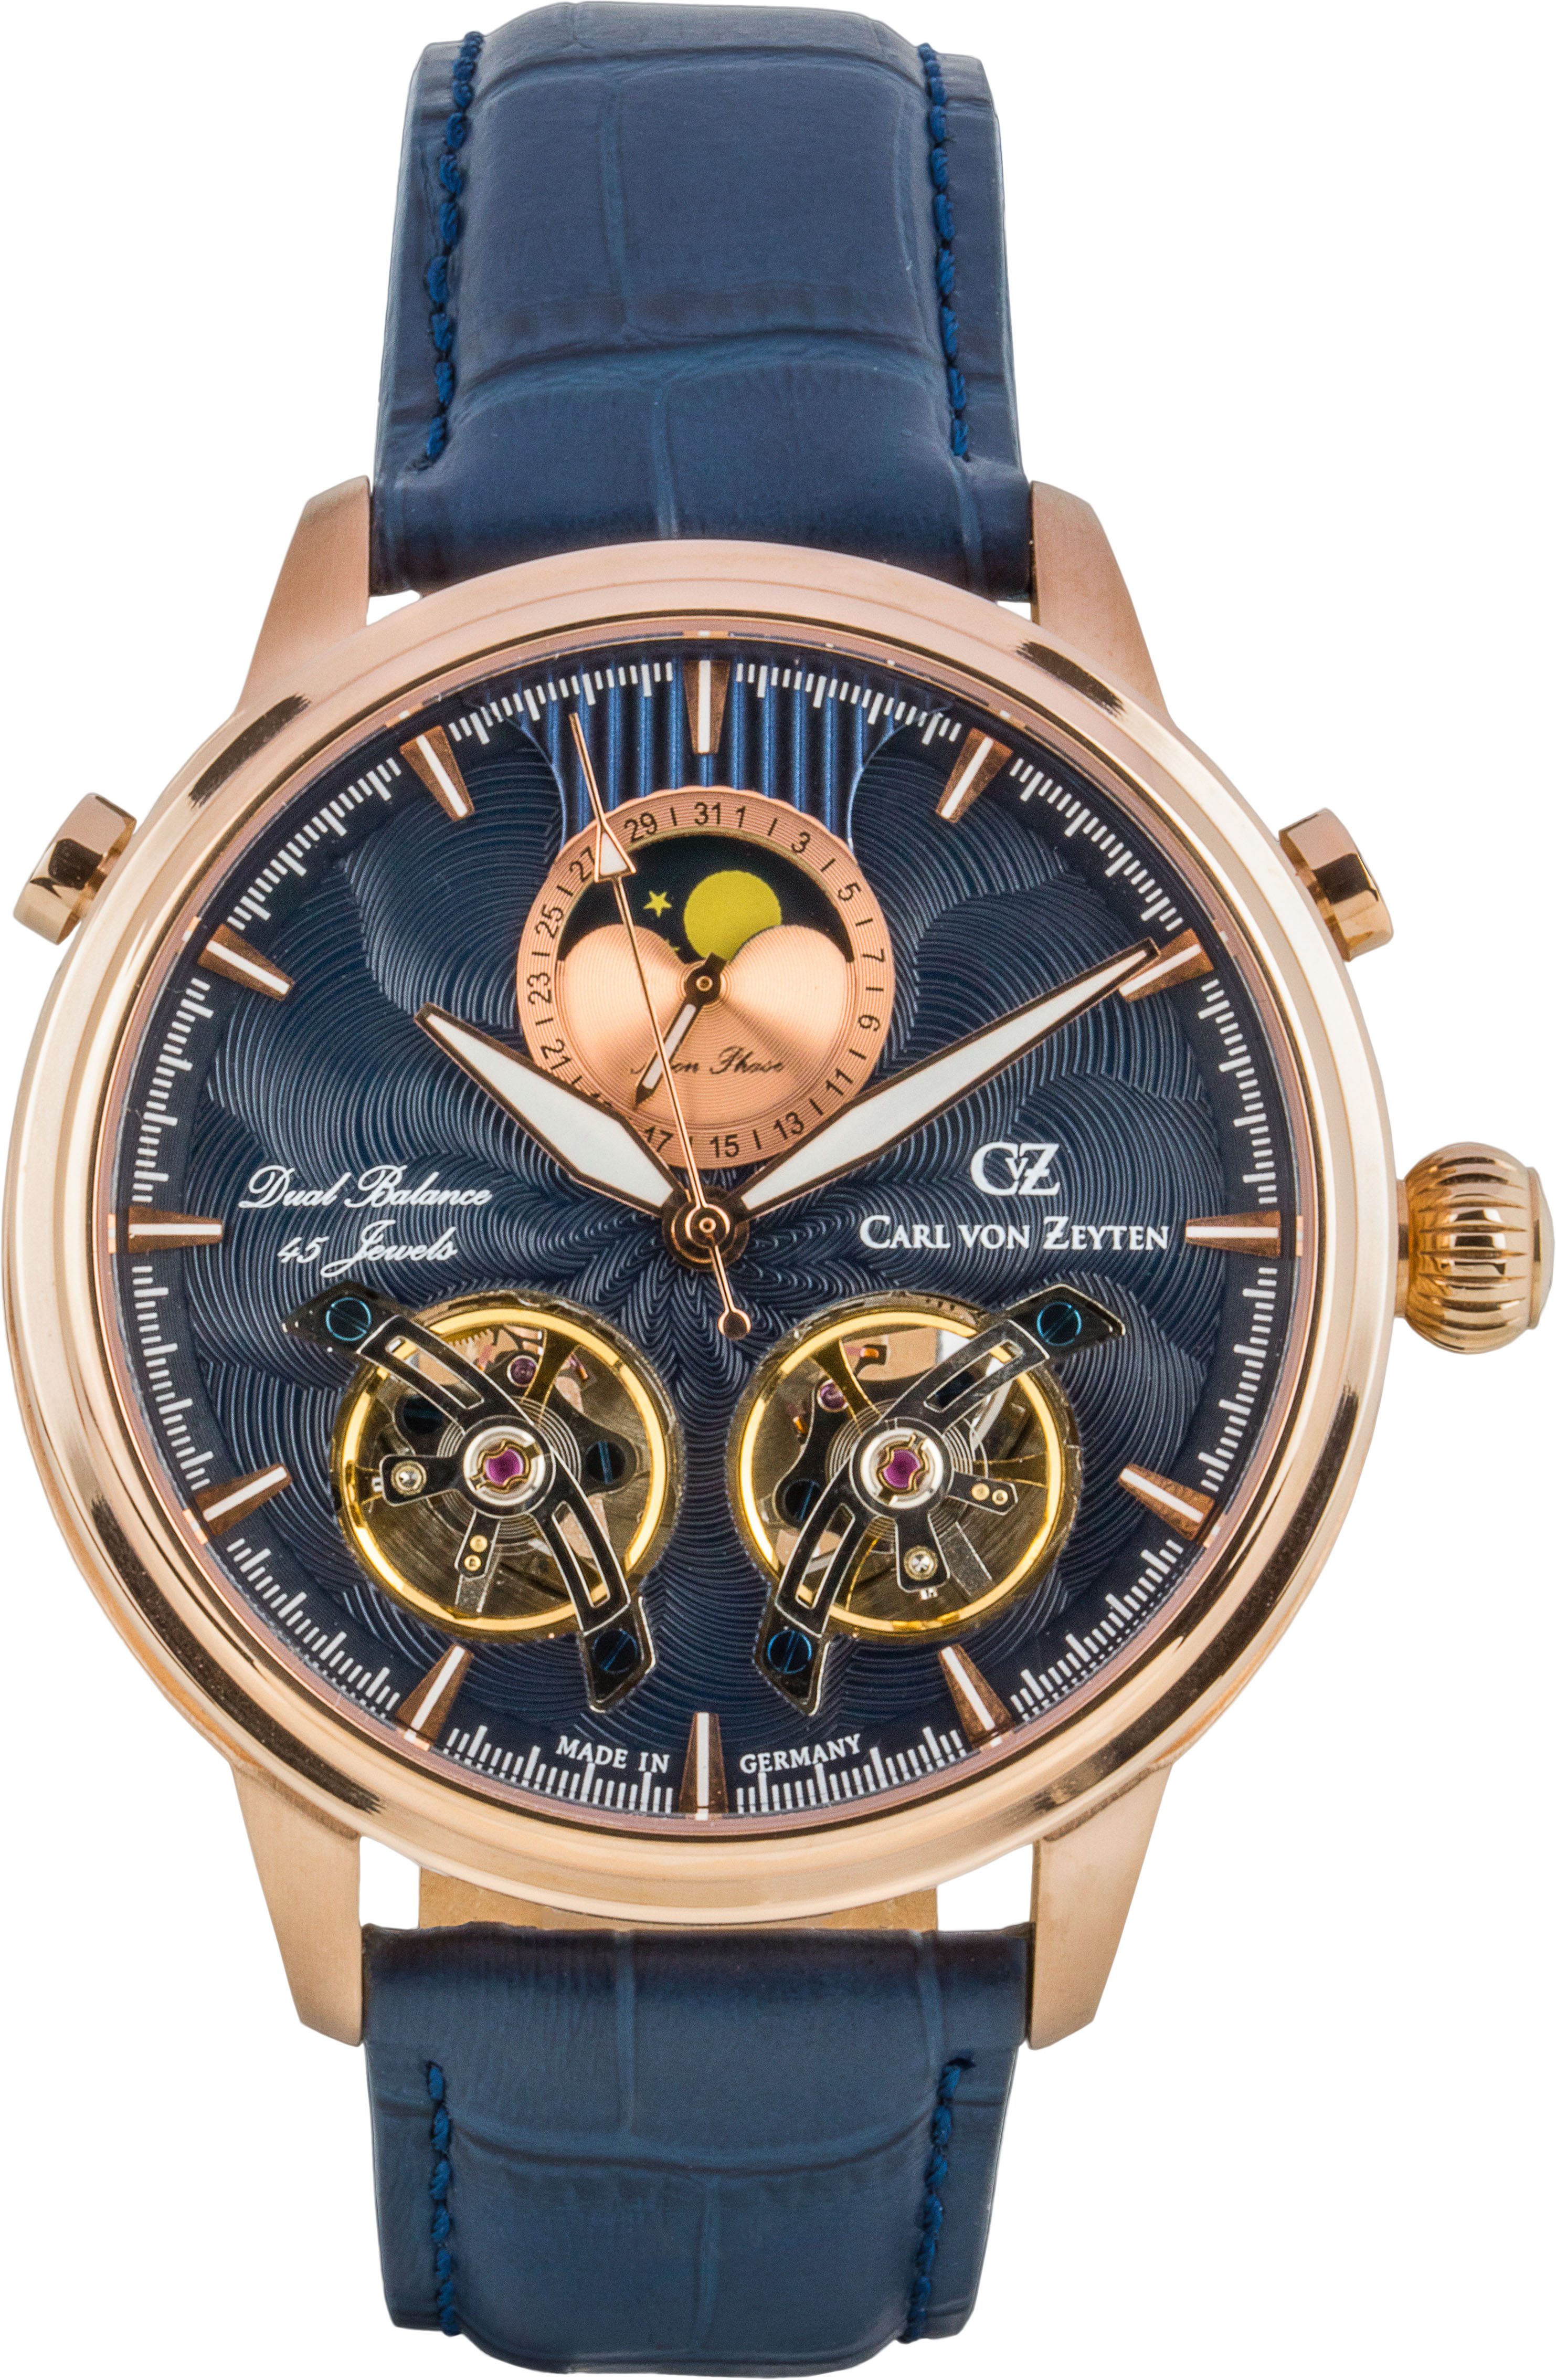 Carl von Zeyten Automatikuhr Durbach, Armbanduhr, mechanische Uhr, Herrenuhr, Datum, Made in Germany